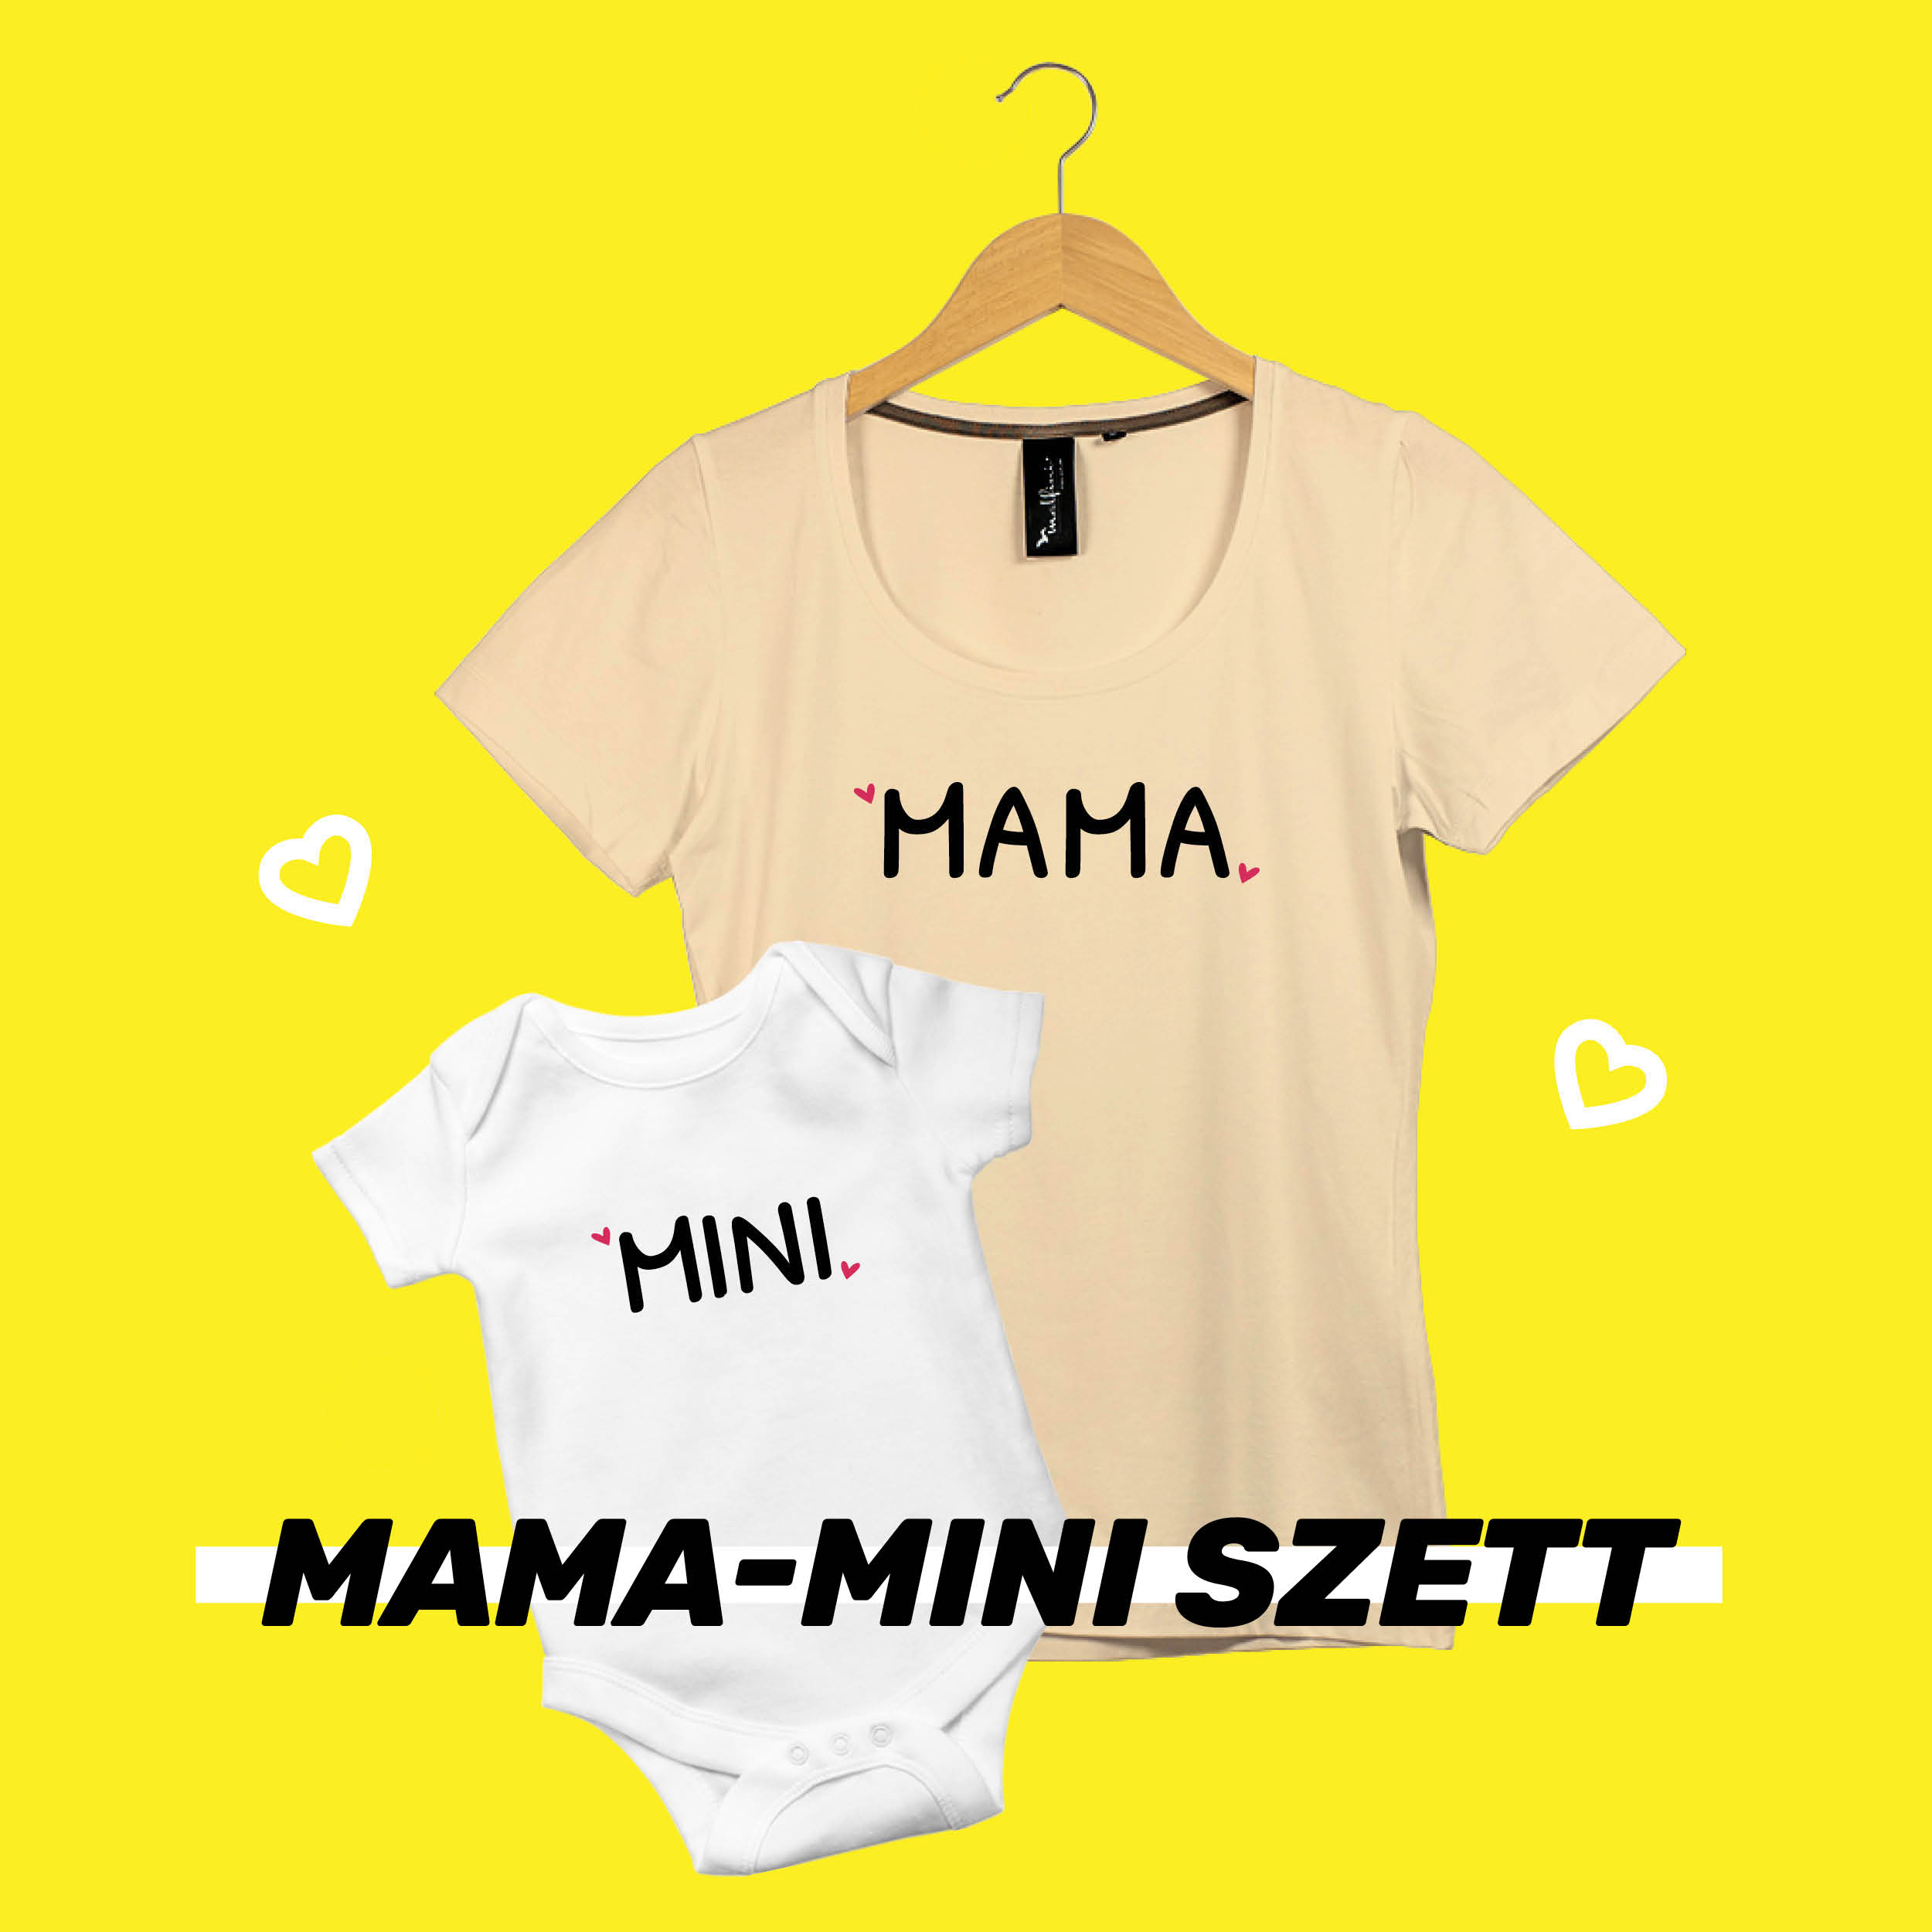 MaMa - Mini szett